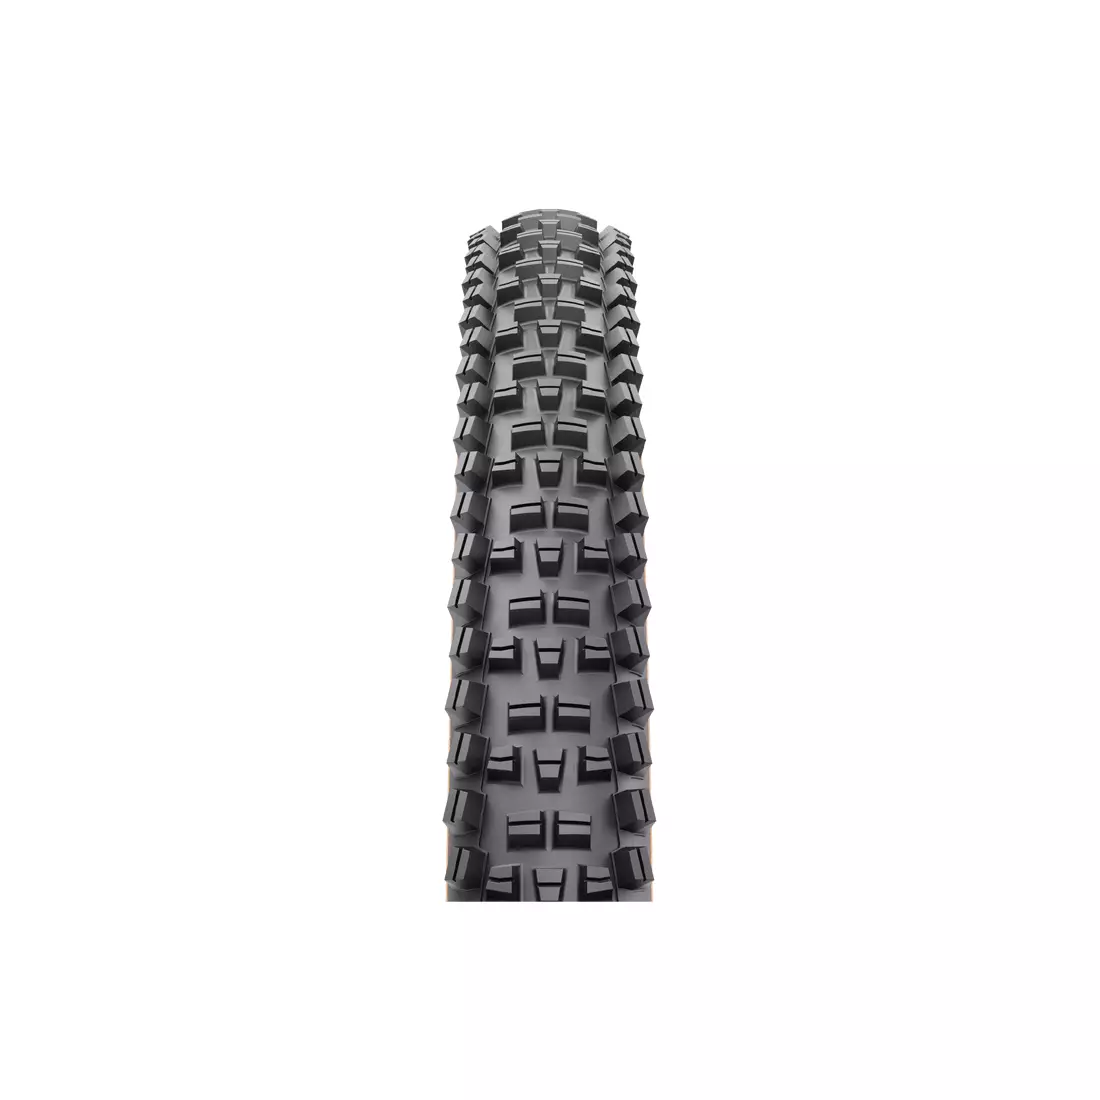 WTB TRAIL BOSS TFR 60 TPI TRITEC Bike tire 29x2,4 